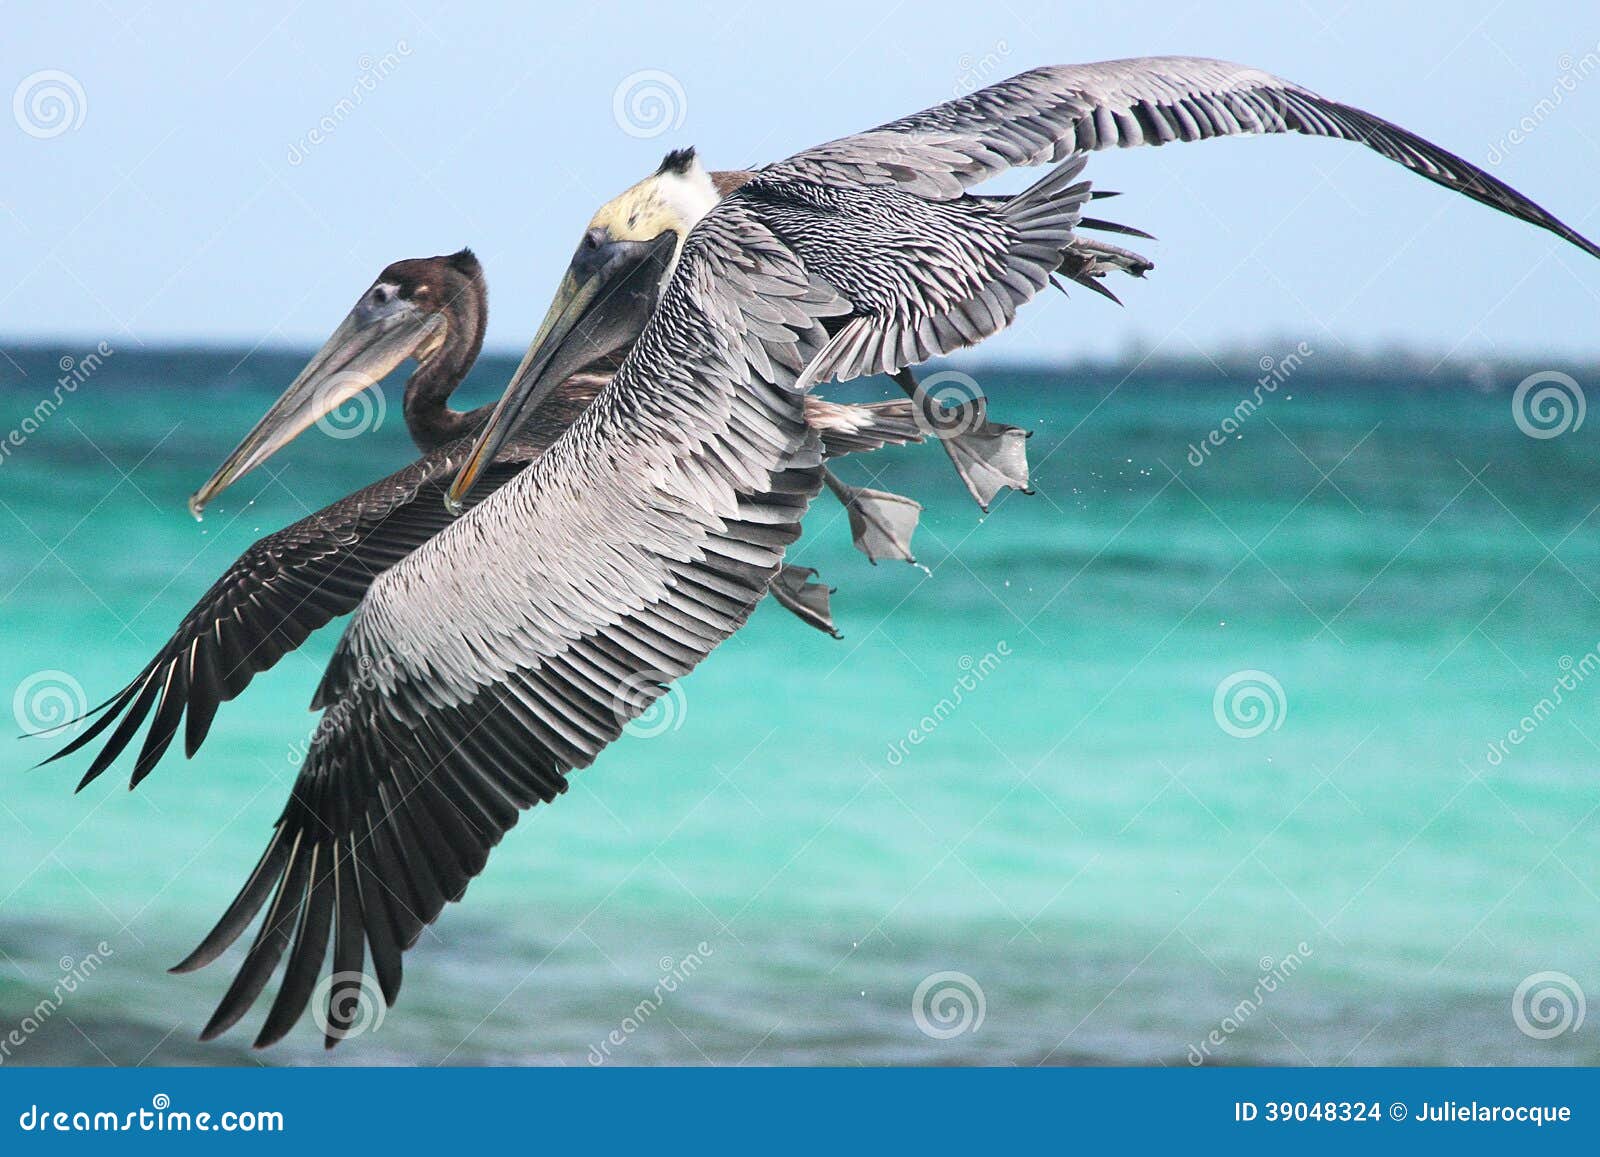 pelicans flying 2